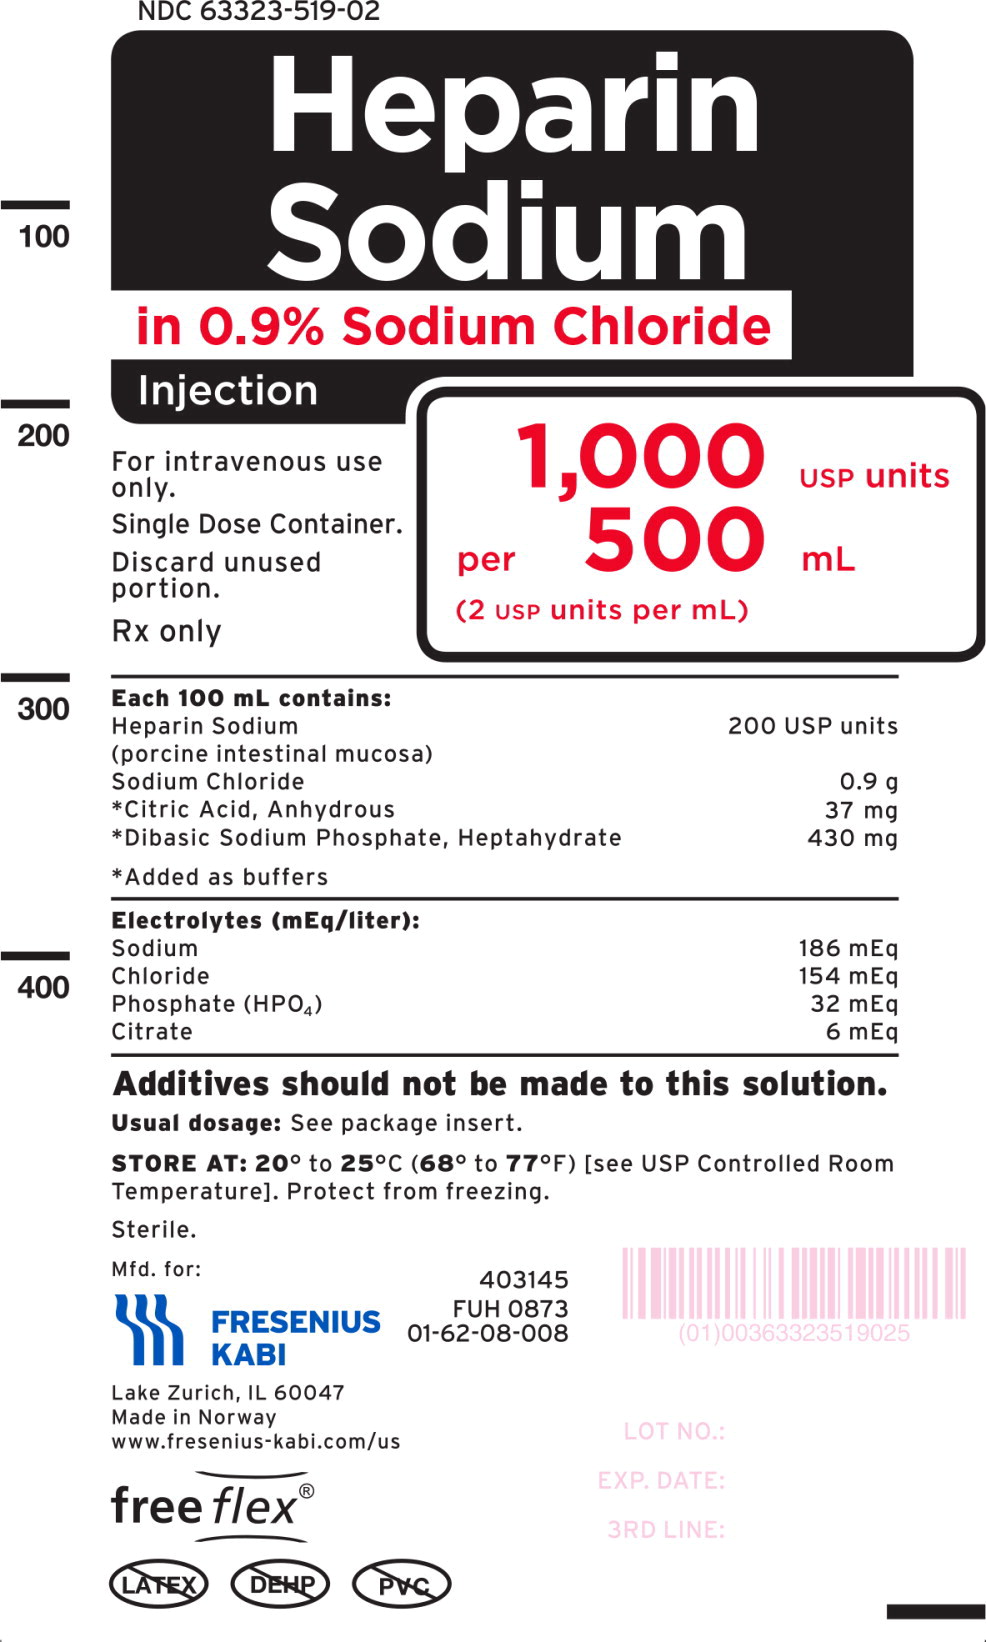 PACKAGE LABEL- PRINCIPAL DISPLAY PANEL – Heparin Sodium 500 mL Bag Label
